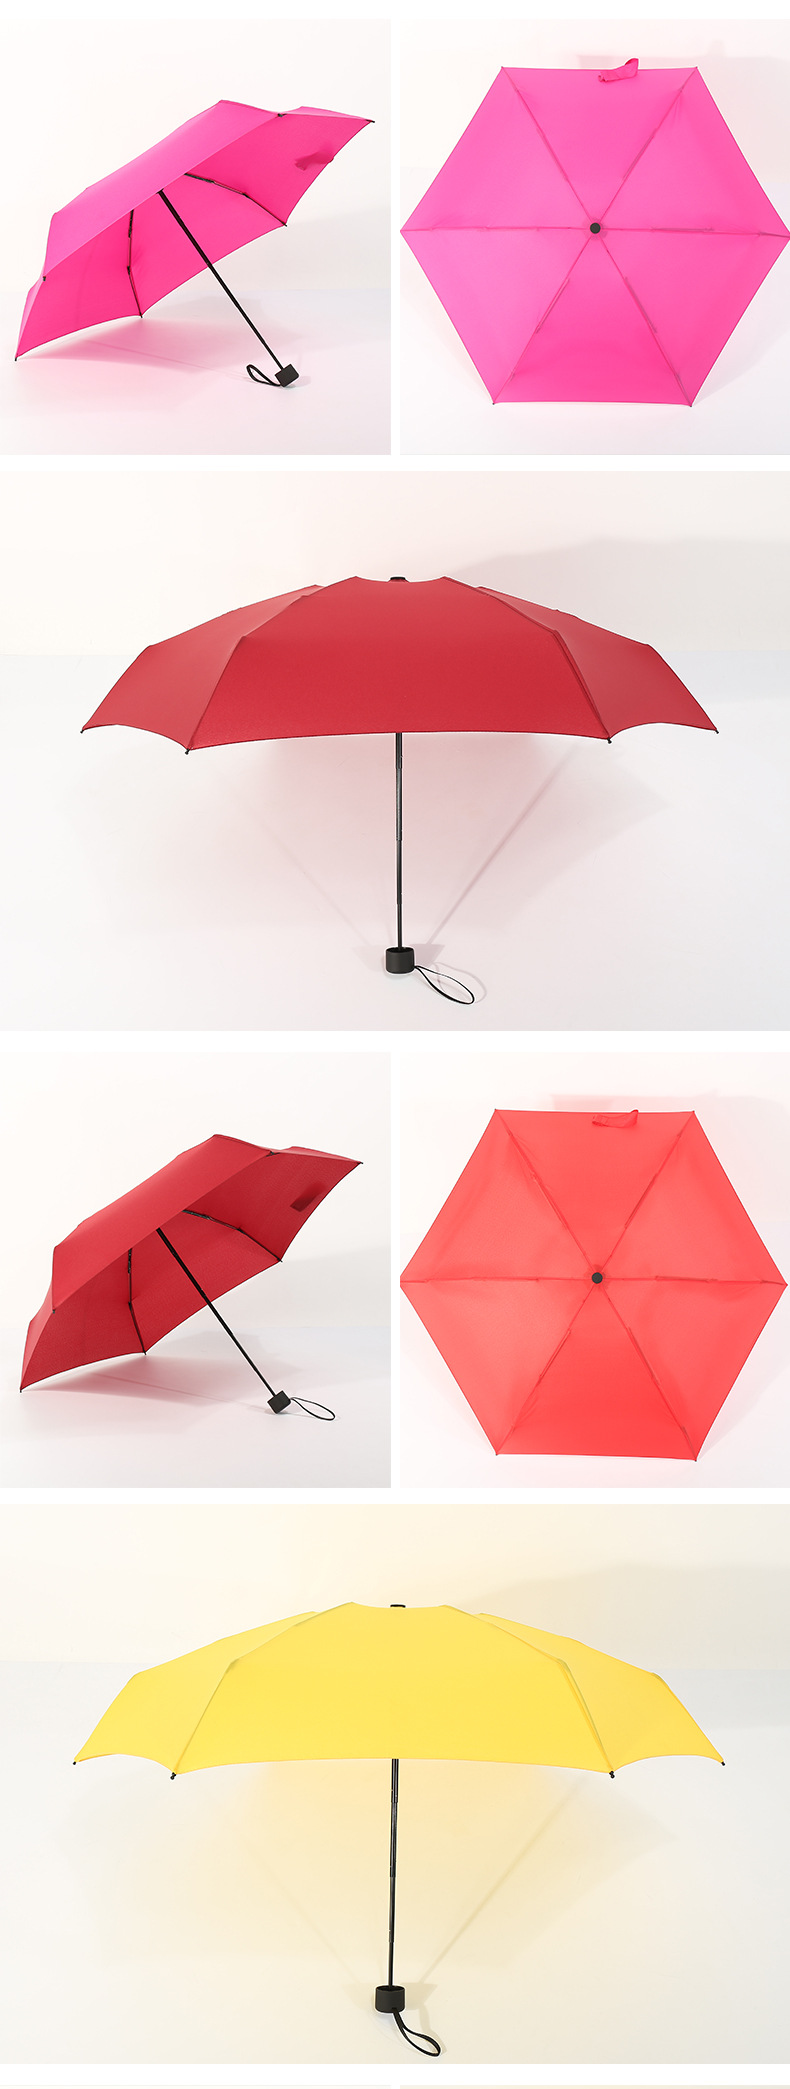 口袋雨傘